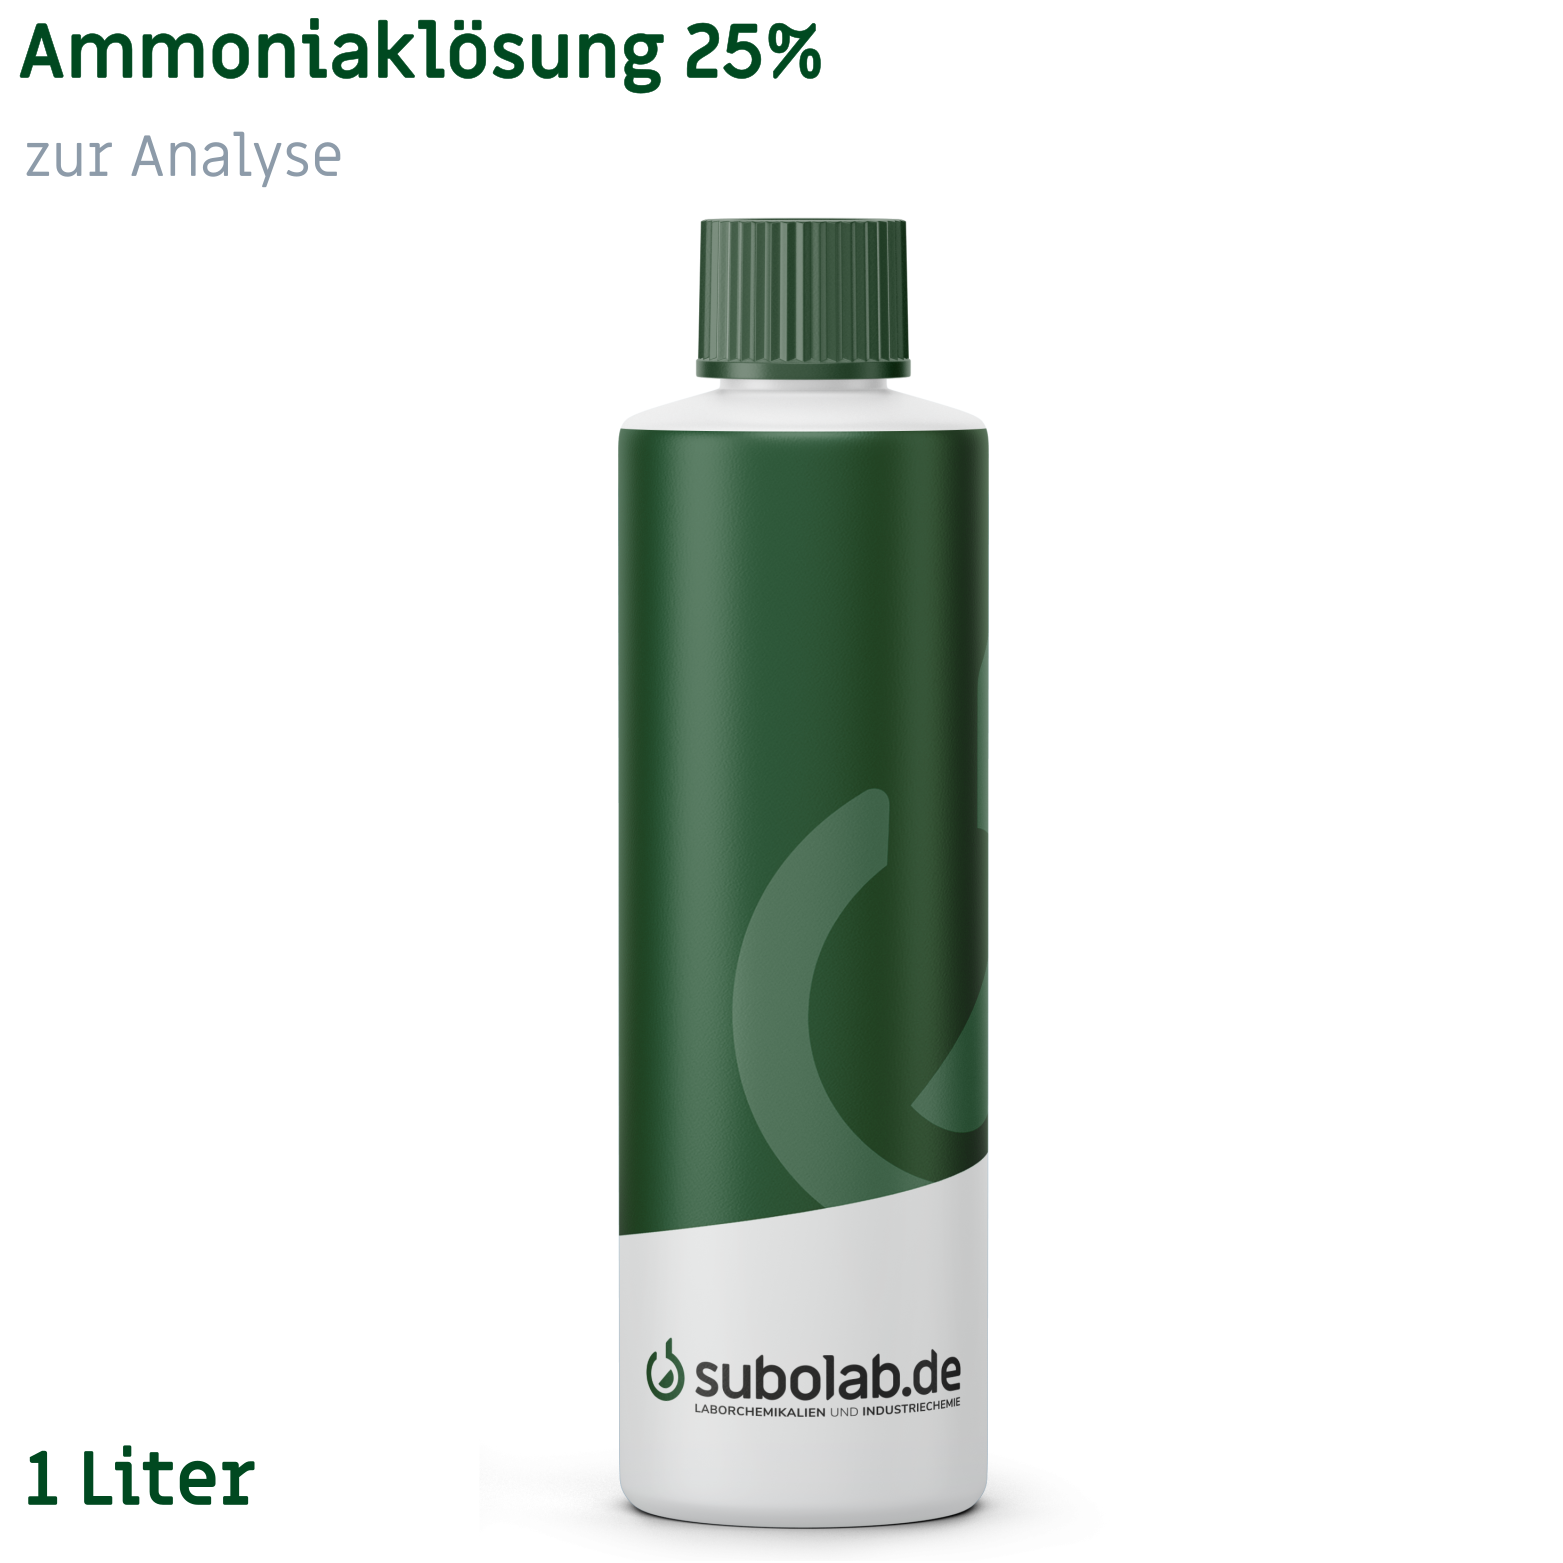 Bild von Ammoniaklösung 25% zur Analyse (1 Liter)